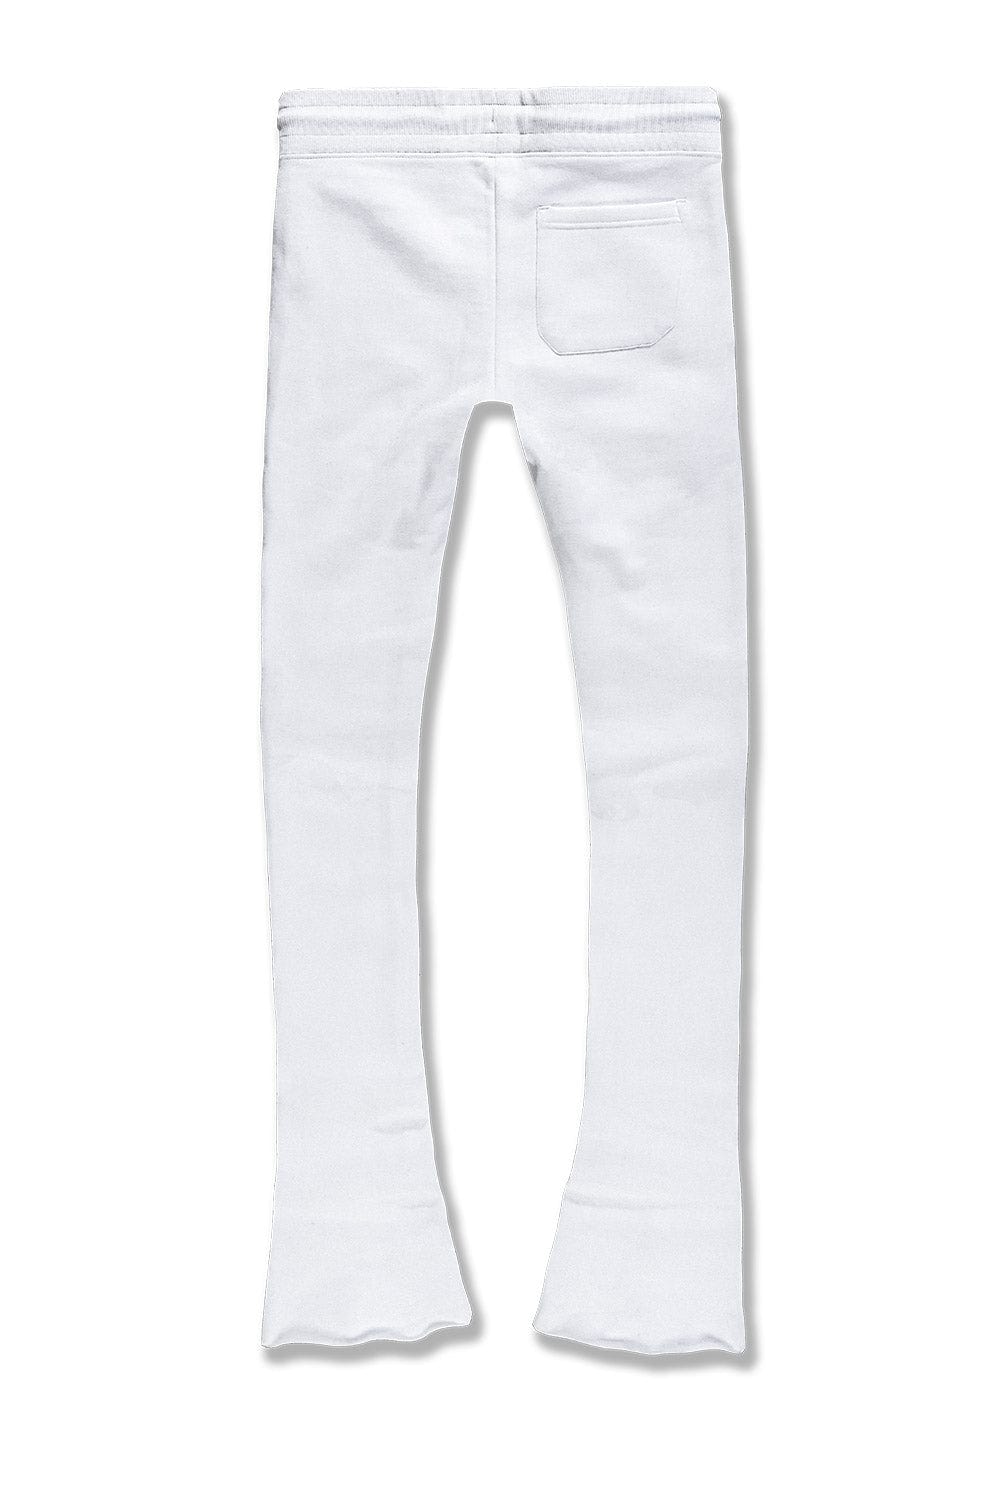 Jordan Craig Uptown Stacked Sweatpants (White)